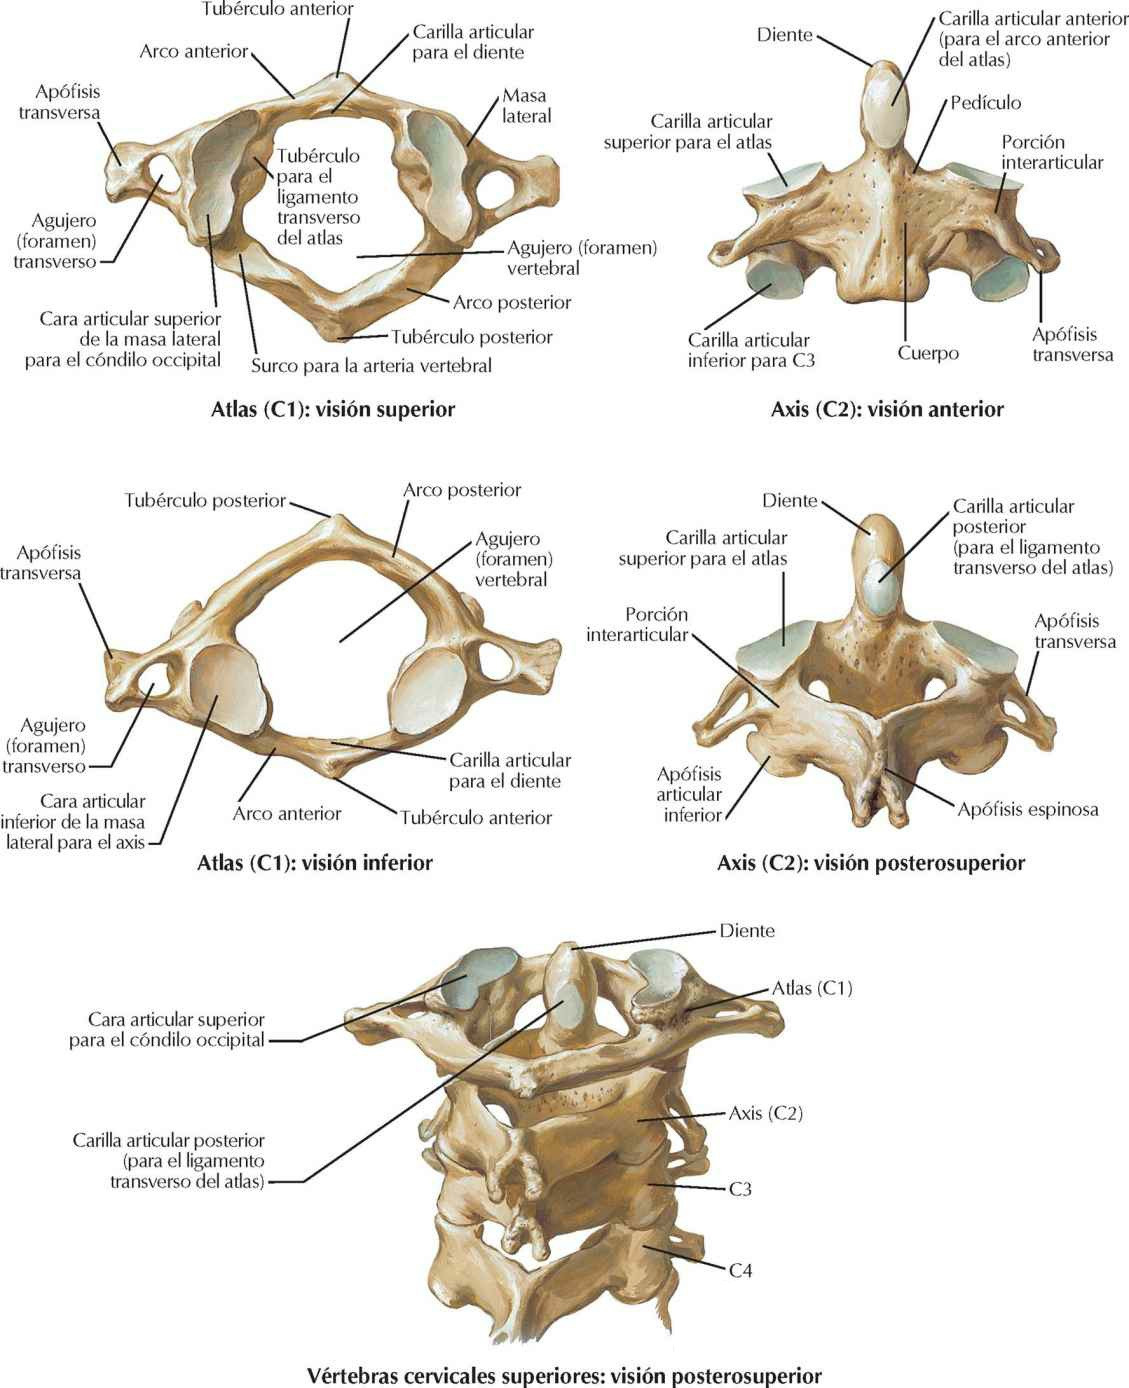 Vértebras cervicales: atlas y axis.